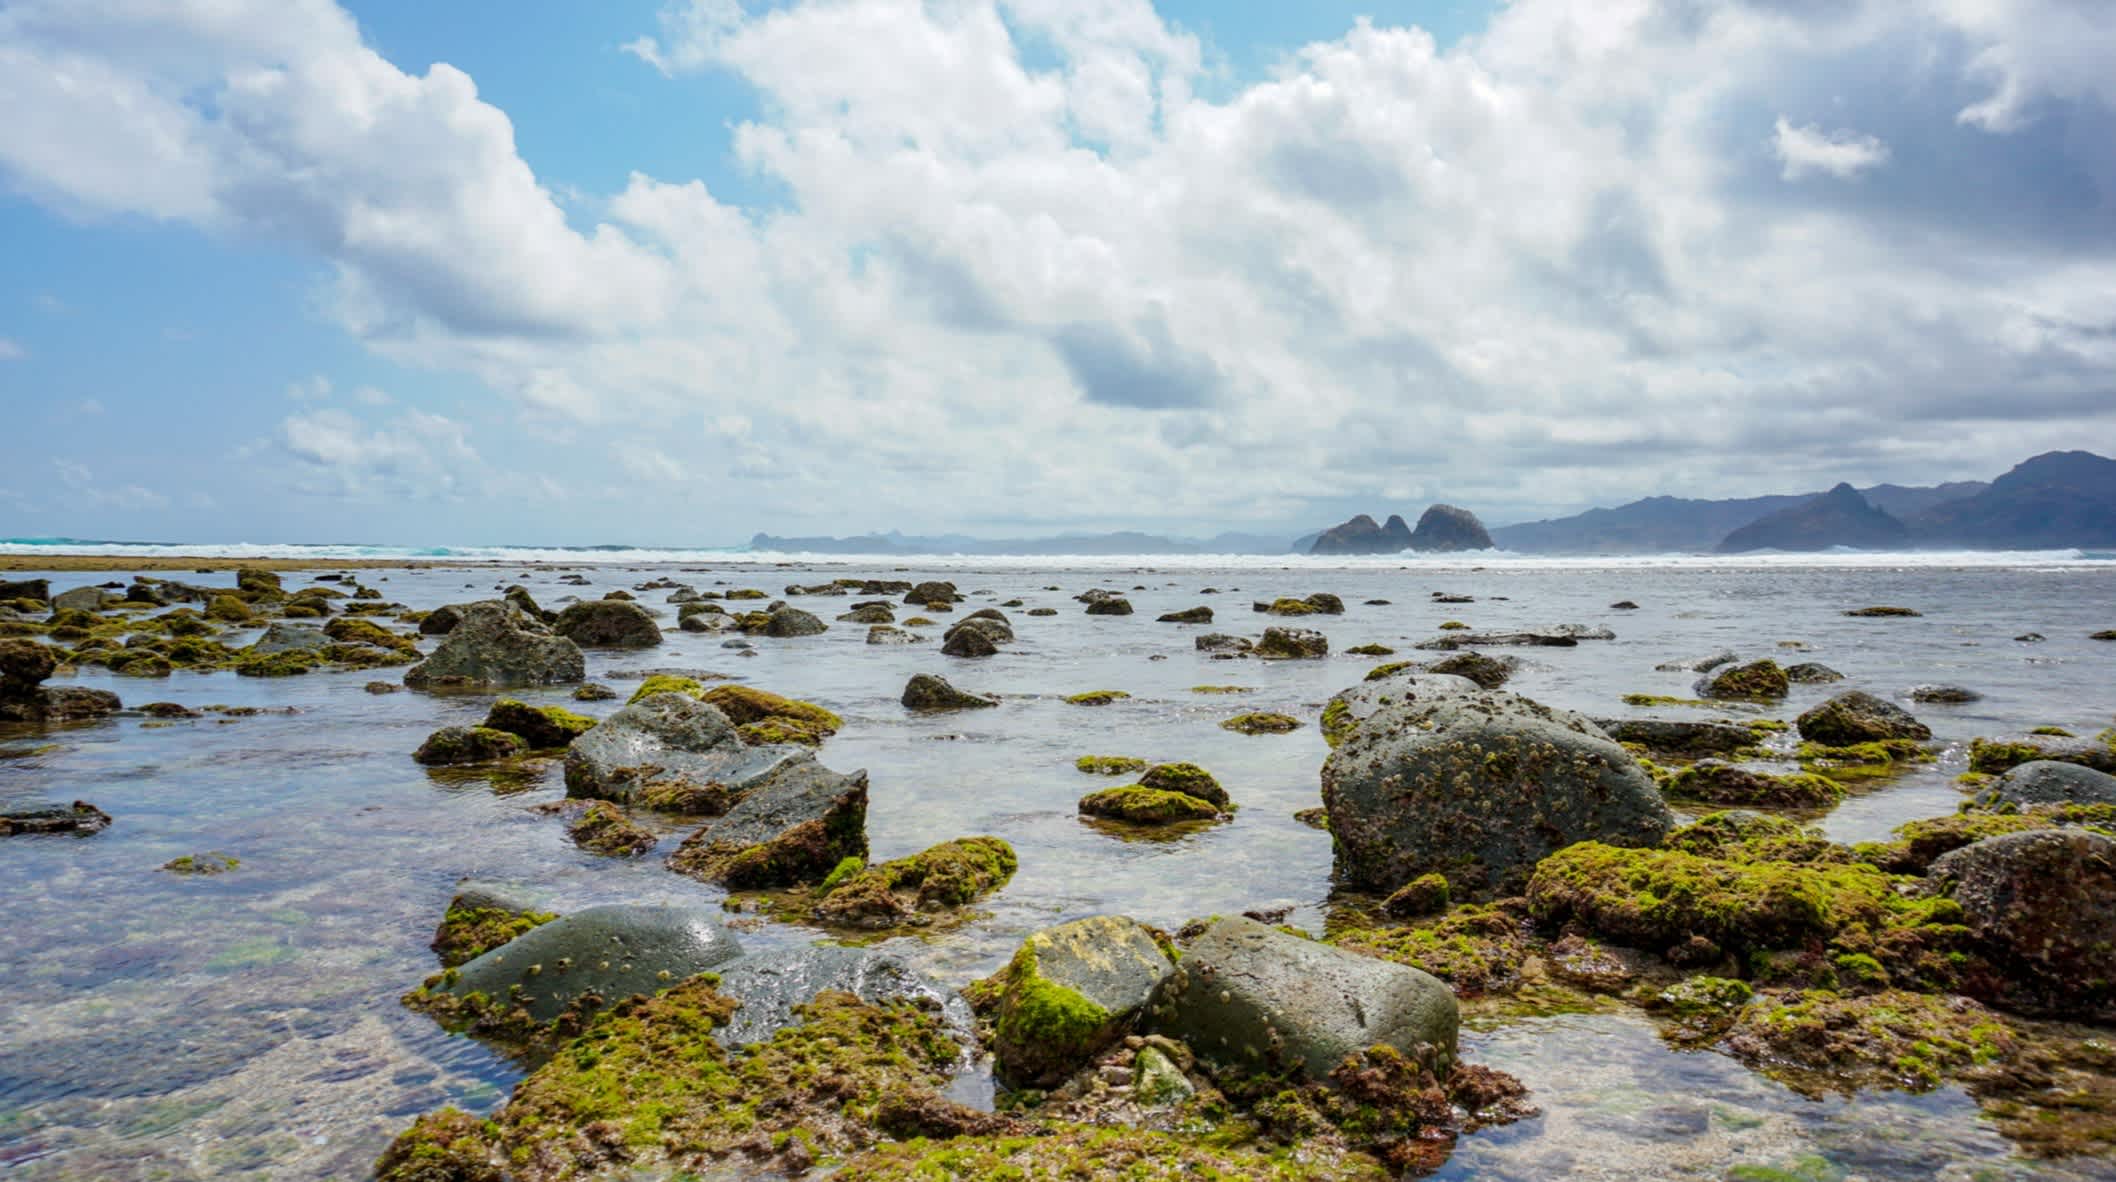 Rochers dans la mer sur la plage de Mawi, île de Lombok, Indonésie

